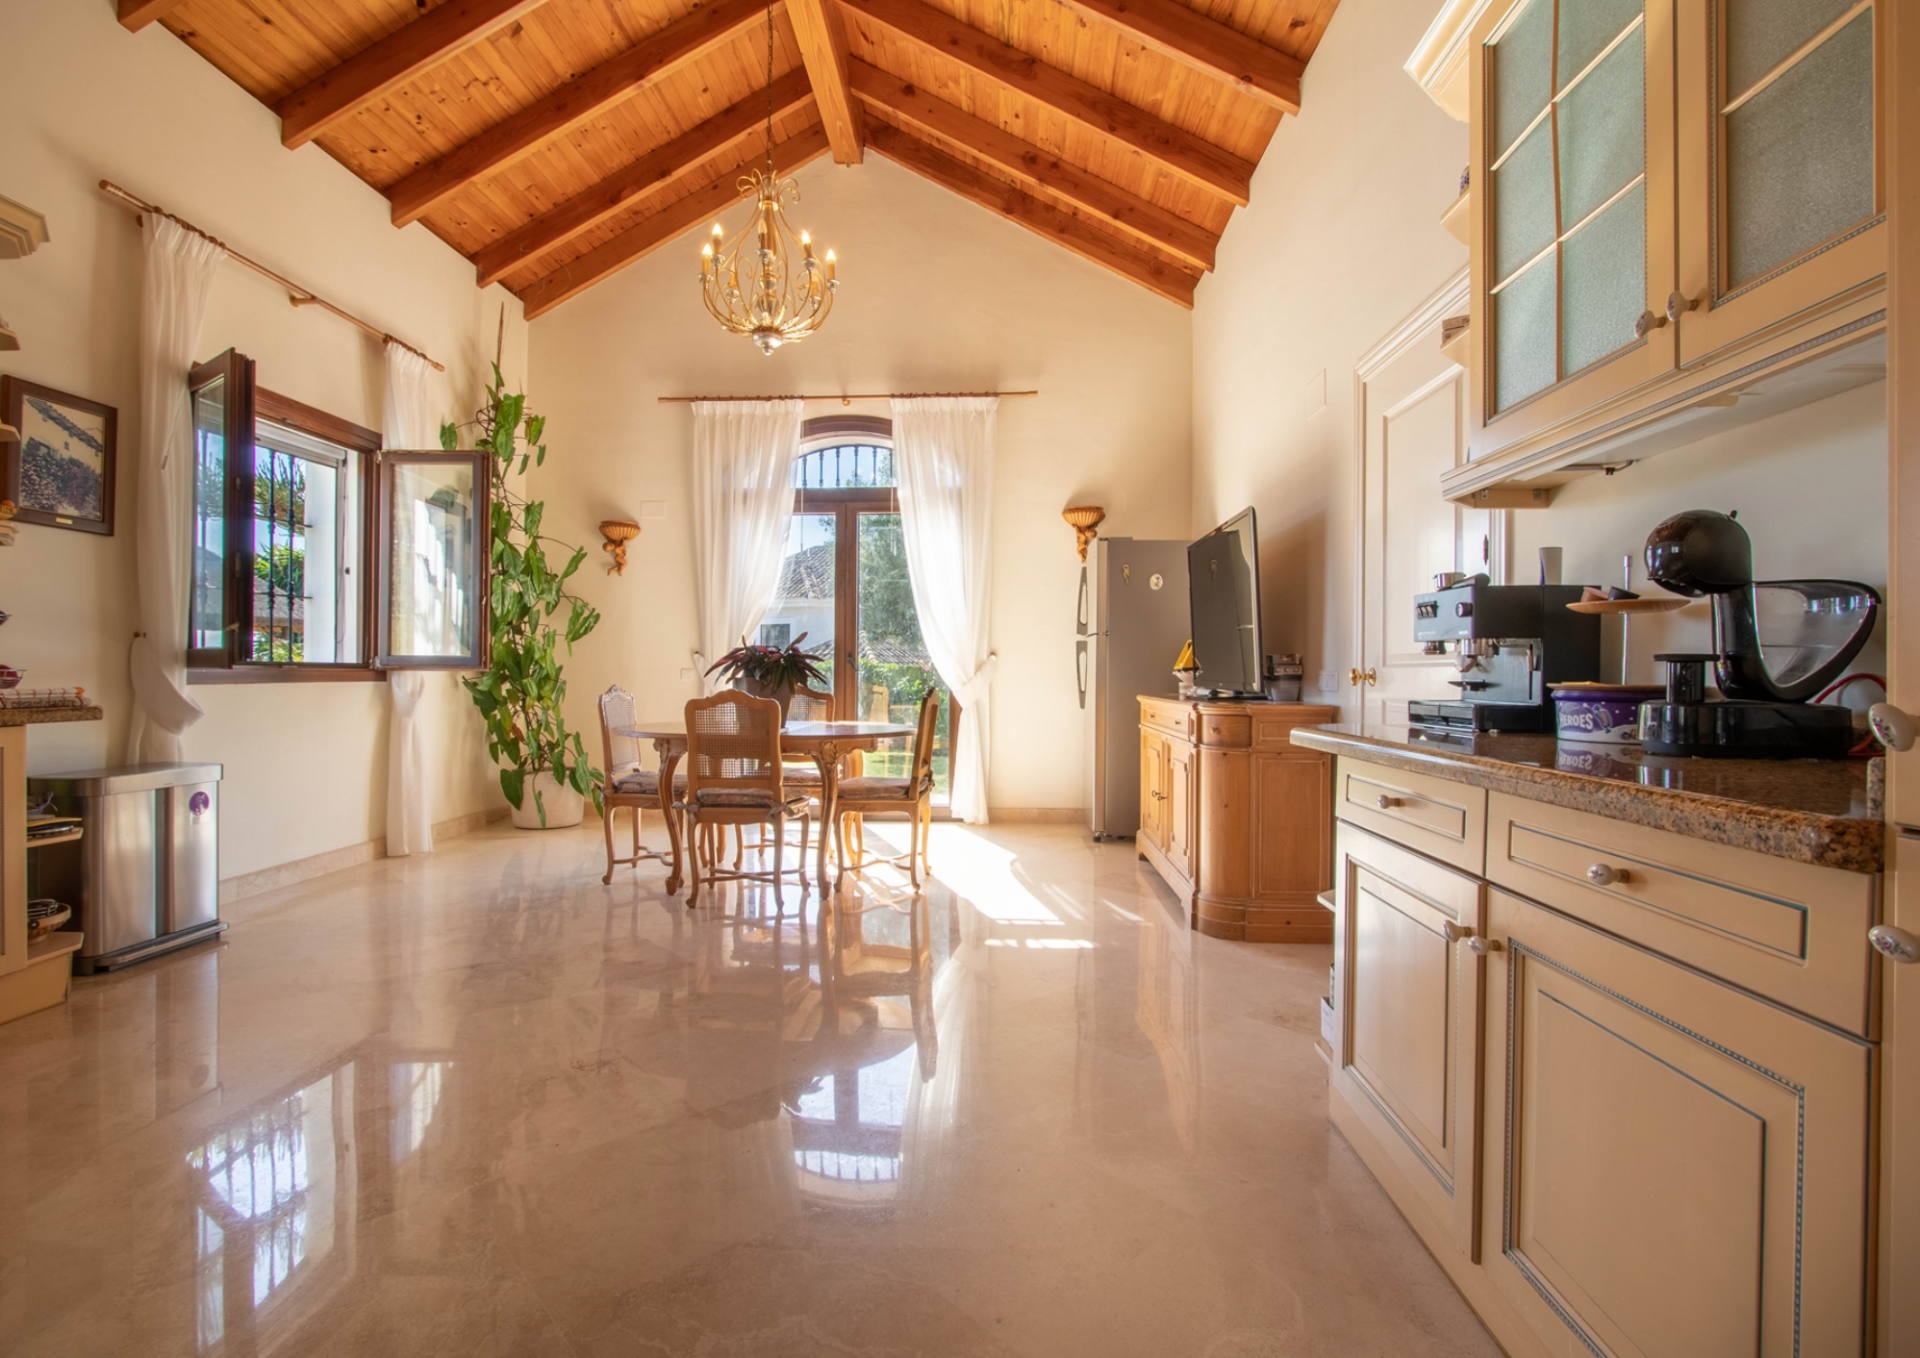 Elegant Mediterranean style villa located in El Paraíso enjoying wonderful sea views